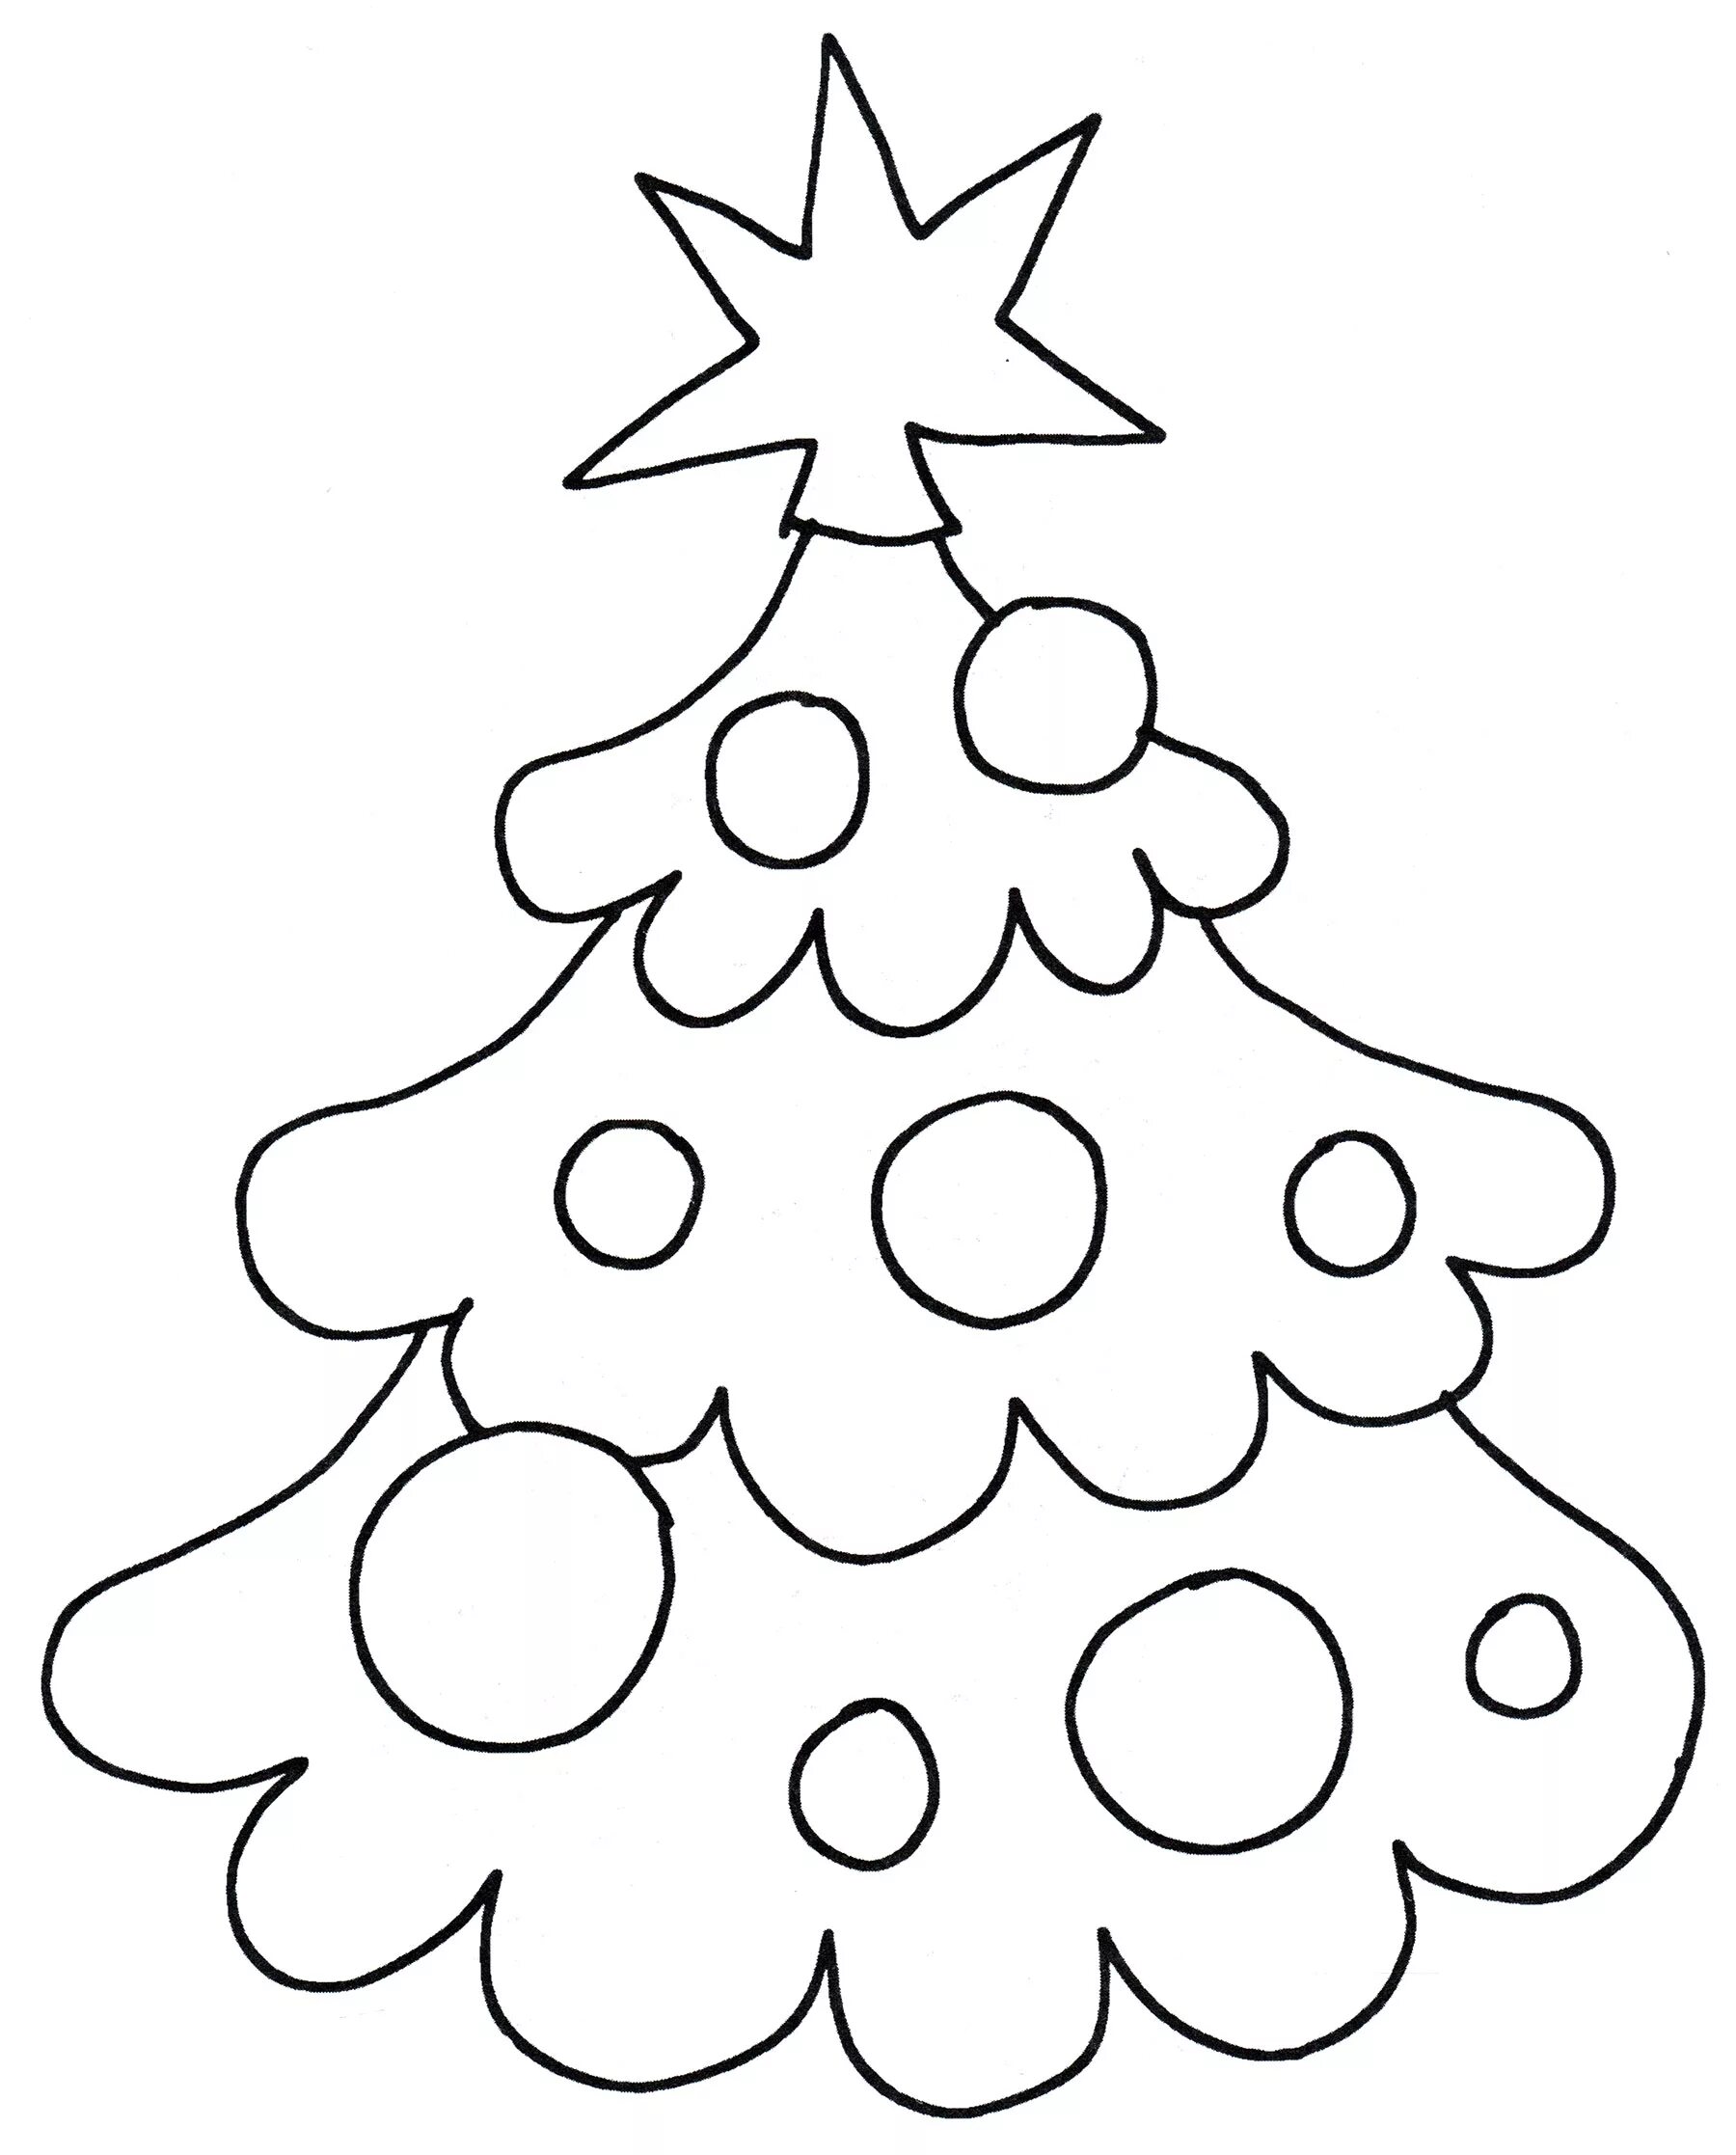 Живая раскраска рождественской елки для детей 3-4 лет